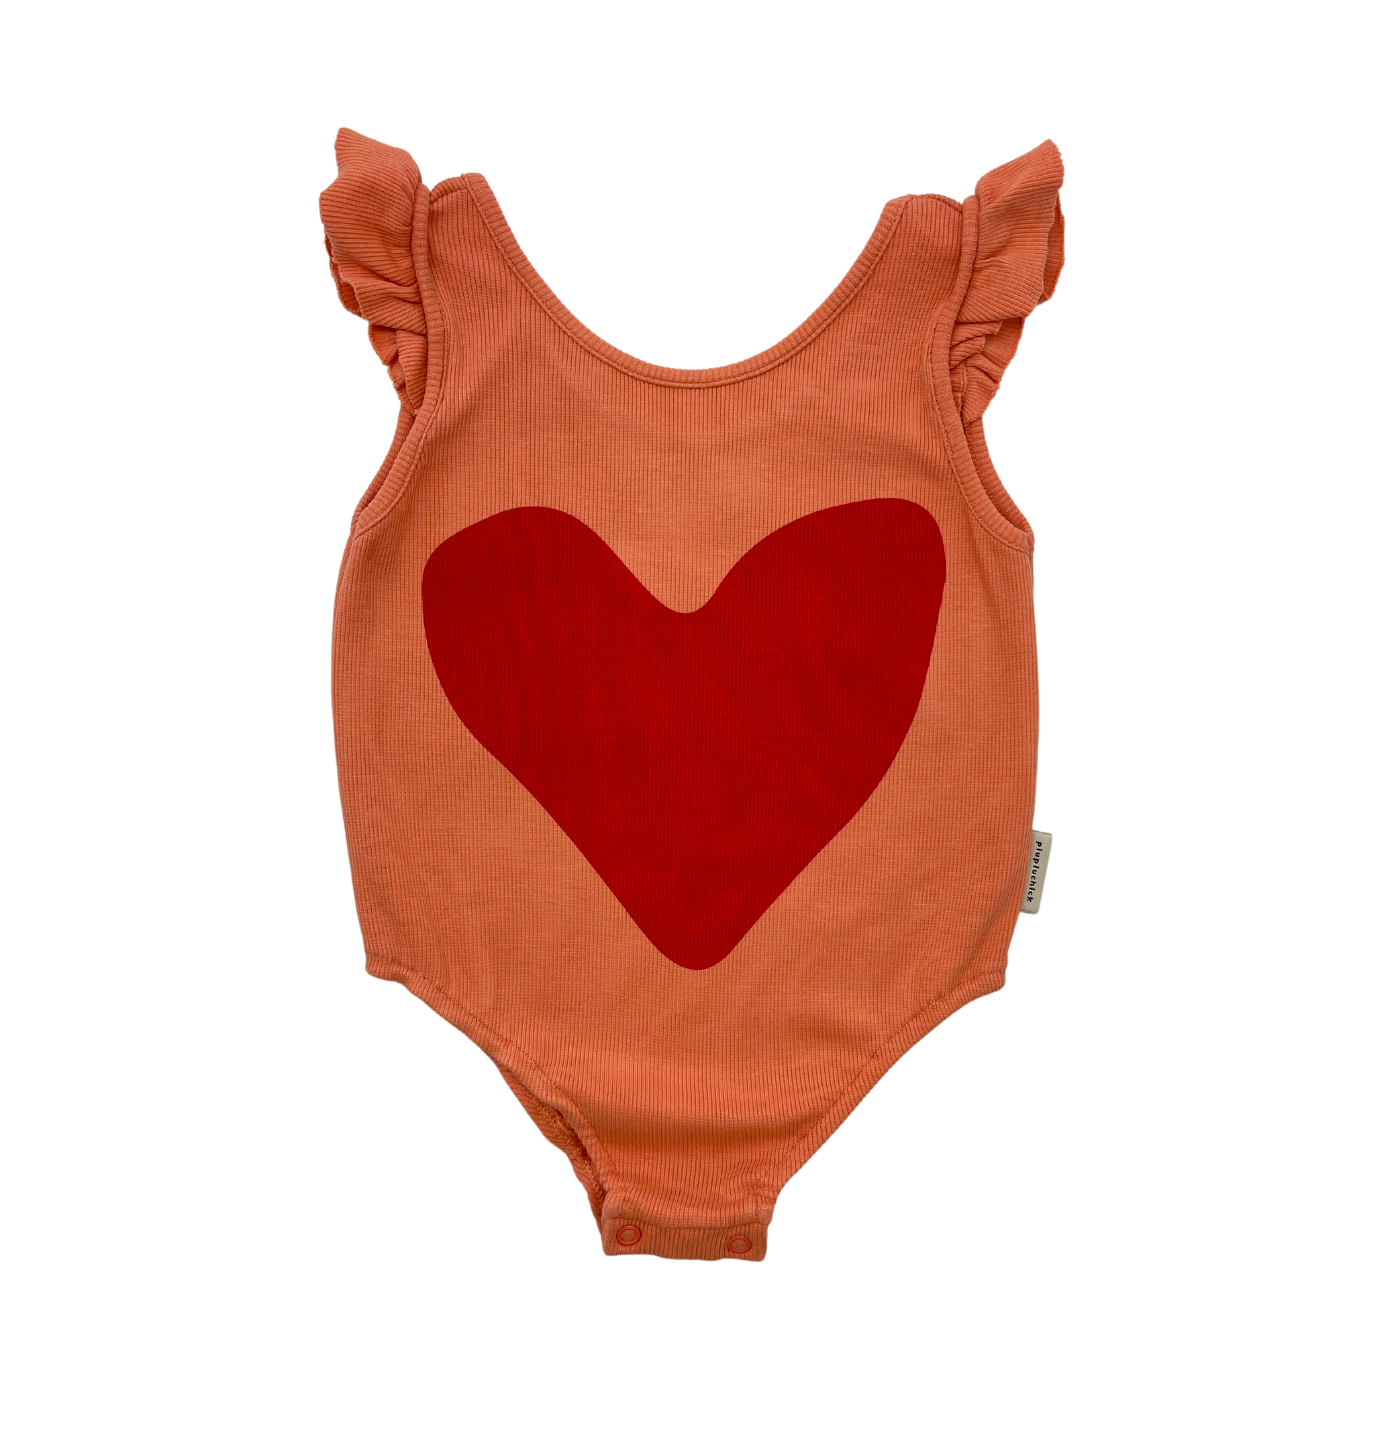 PIUPIUCHICK - Orange heart bodysuit - 6 years old